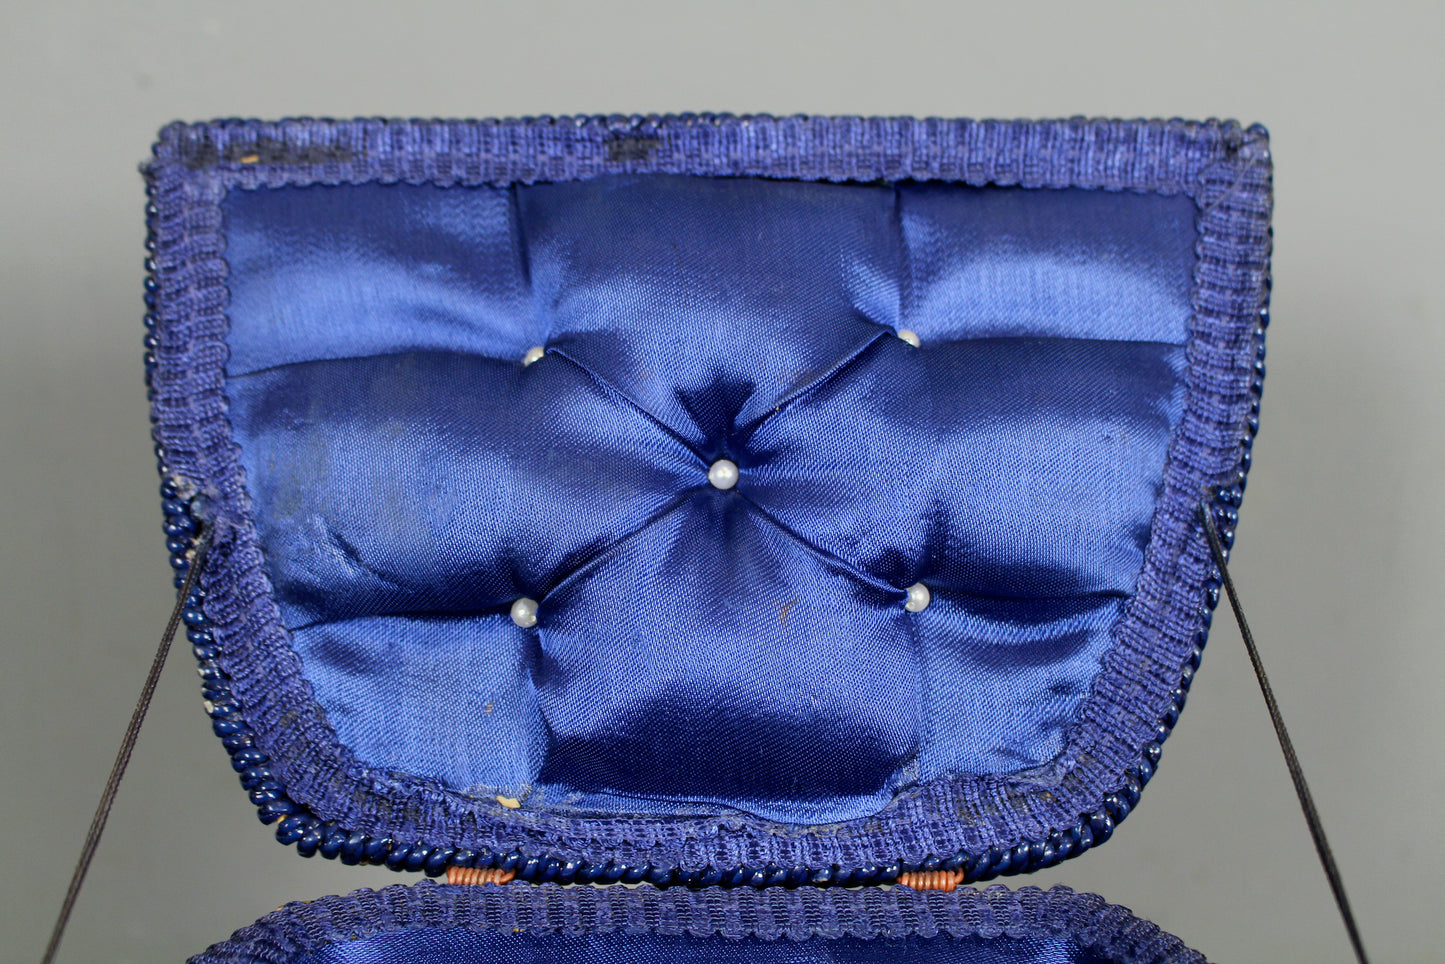 Singer Blue Tartan & Woven Sewing Basket